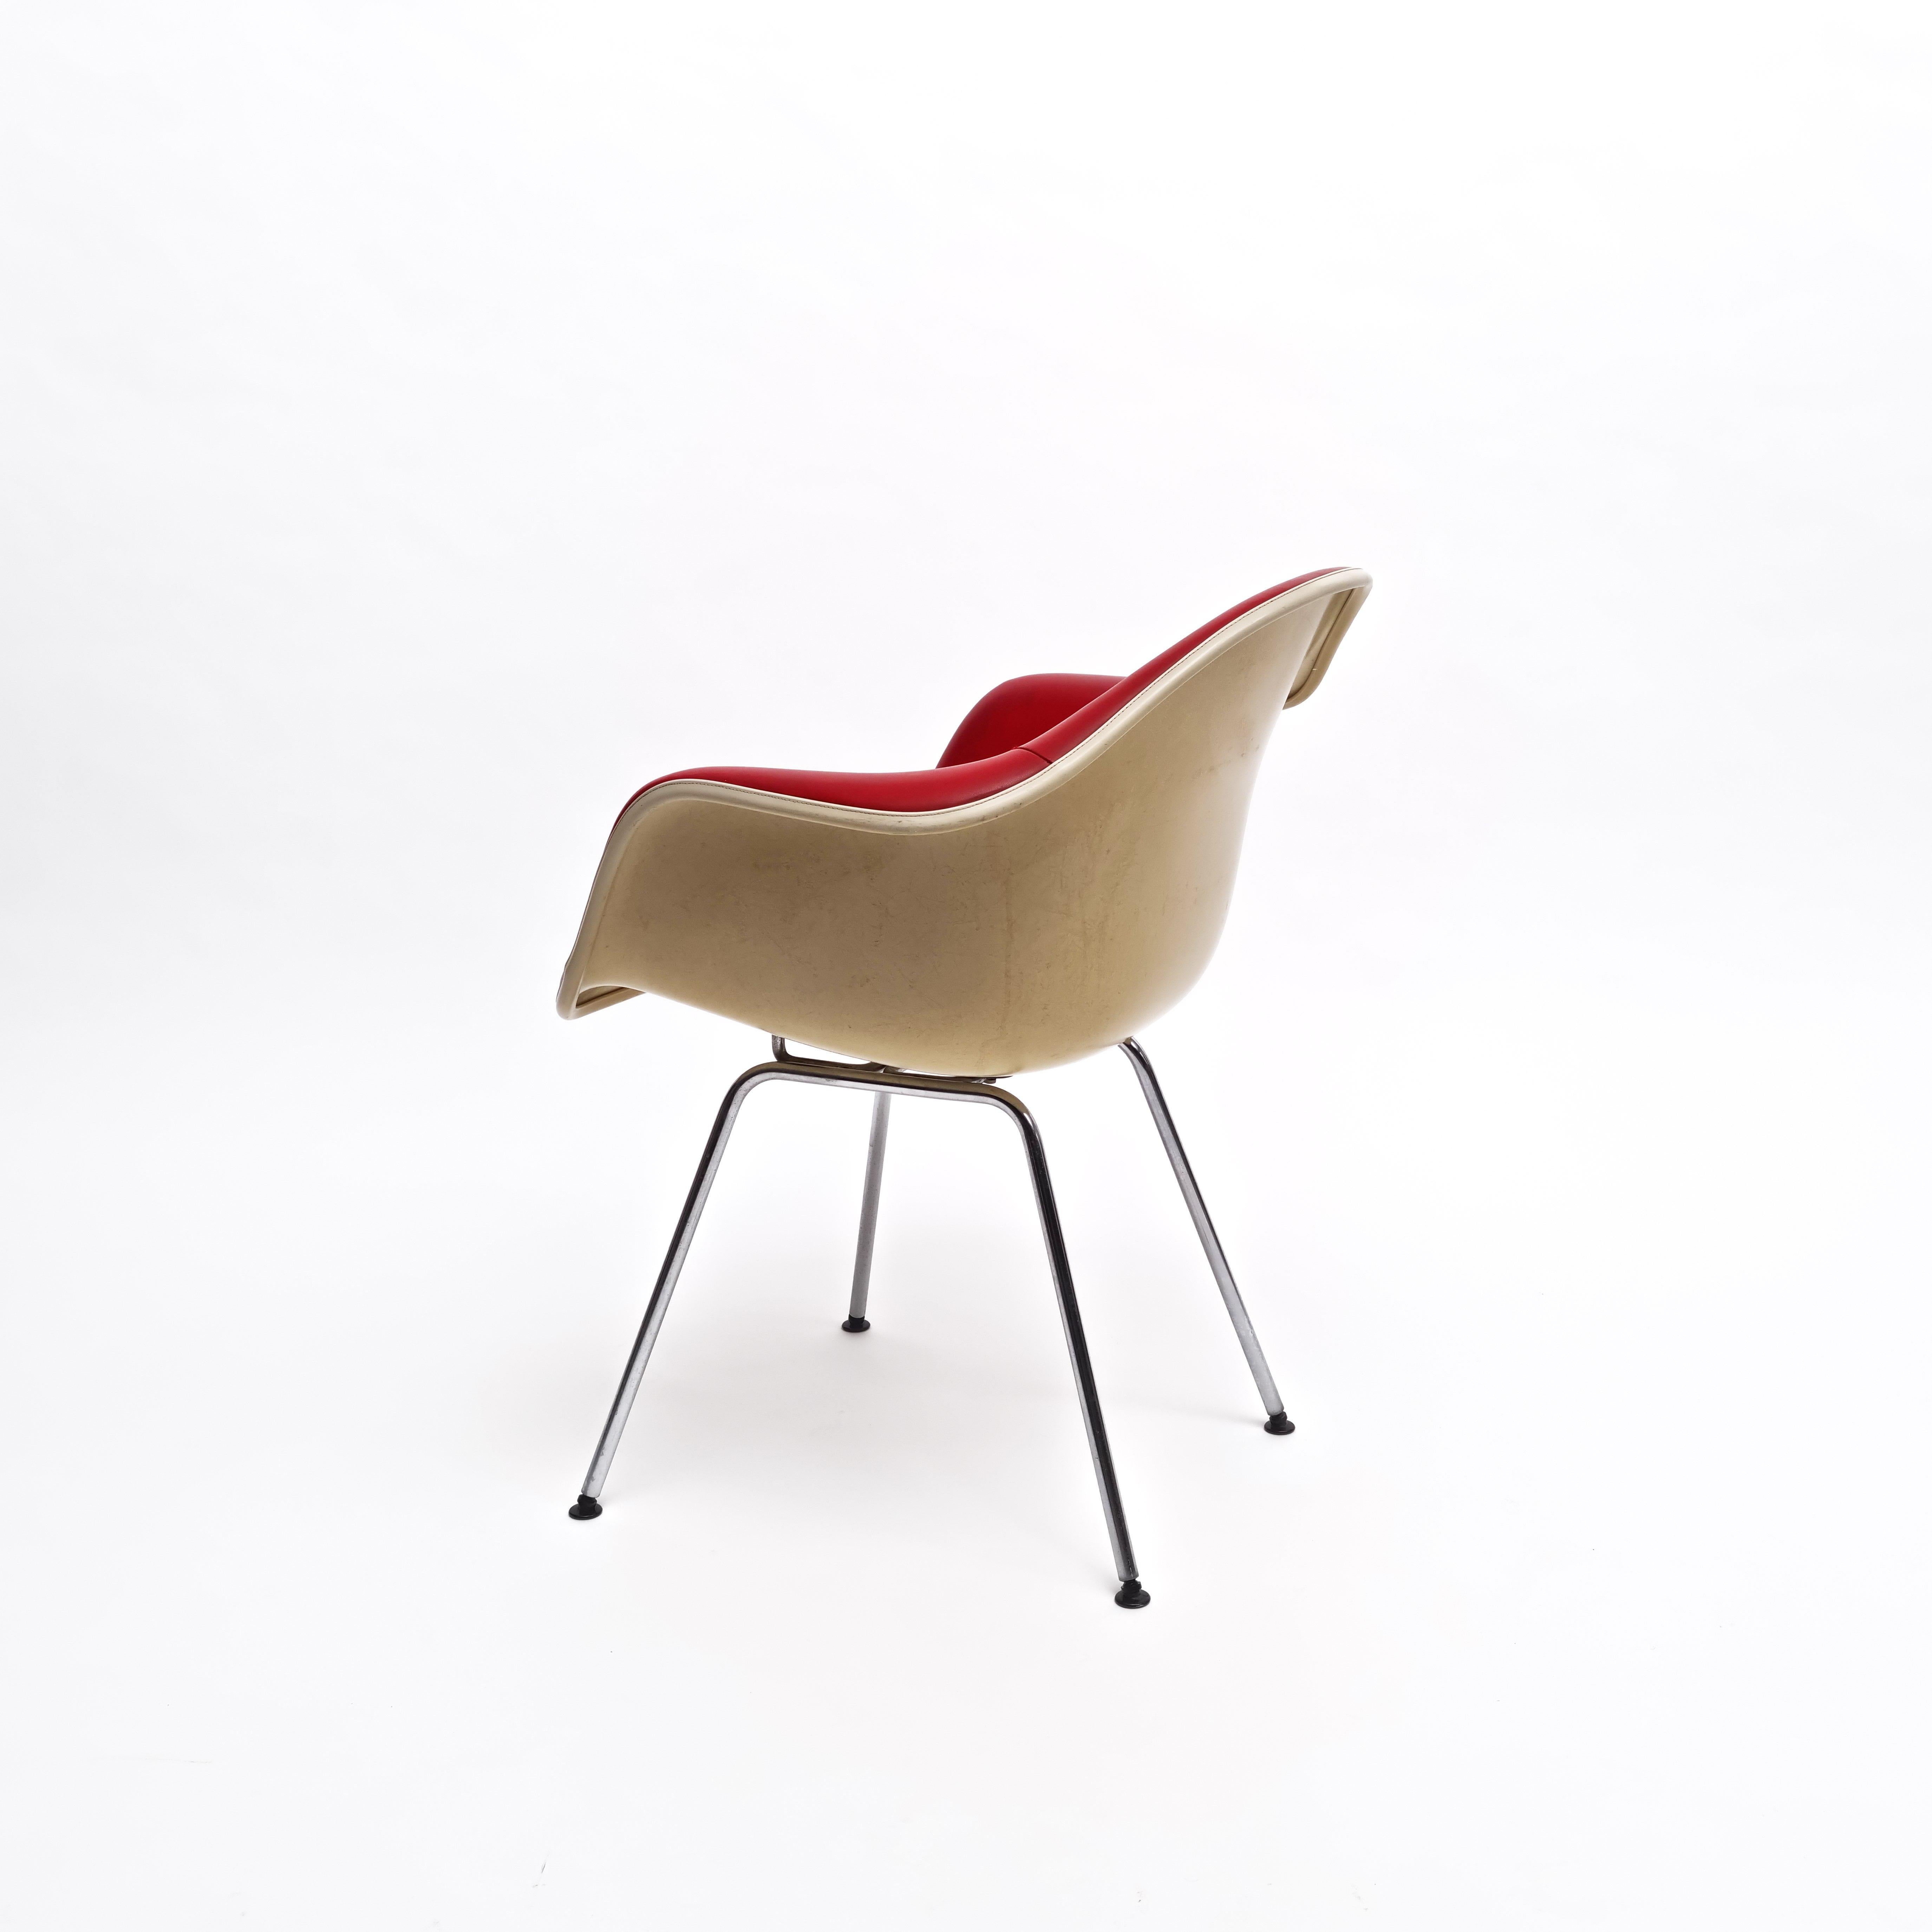 Ein Dax-Seilkantenstuhl aus Fiberglas mit Zenith-Schale, entworfen von Charles & Ray Eames für Herman Miller Co., mit aluminiumbeschichteten Beinen, die die ursprüngliche rote Lederpolsterung über einer Fiberglasschale beibehalten.
Hergestellt von